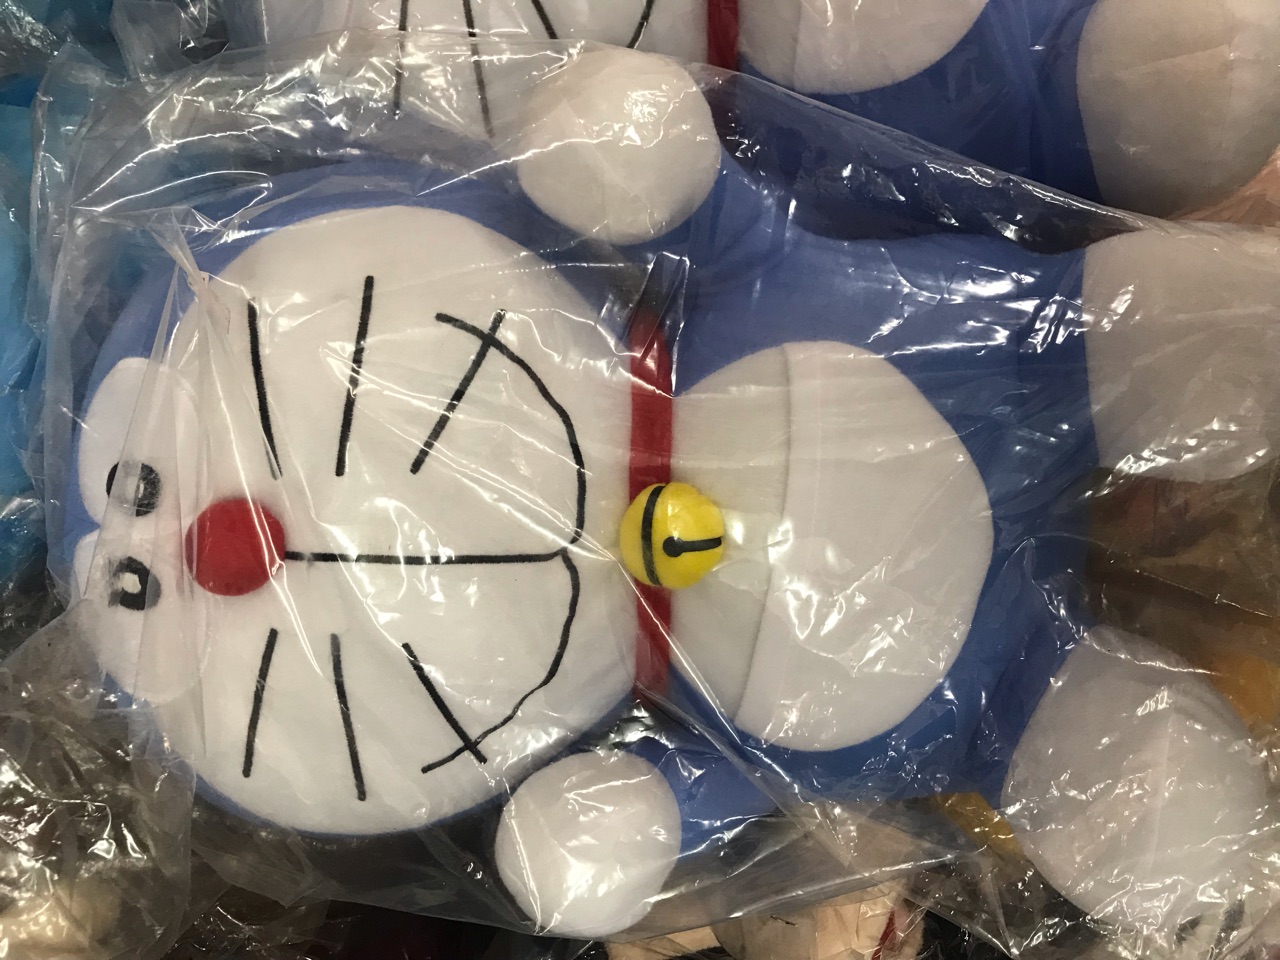 ตุ๊กตาโดราเอมอน ขนาด 40 ซม ลิขสิทธ์แท้   Cute Large Doraemon Plush Stuffed Animal, 40 Cm Plushie